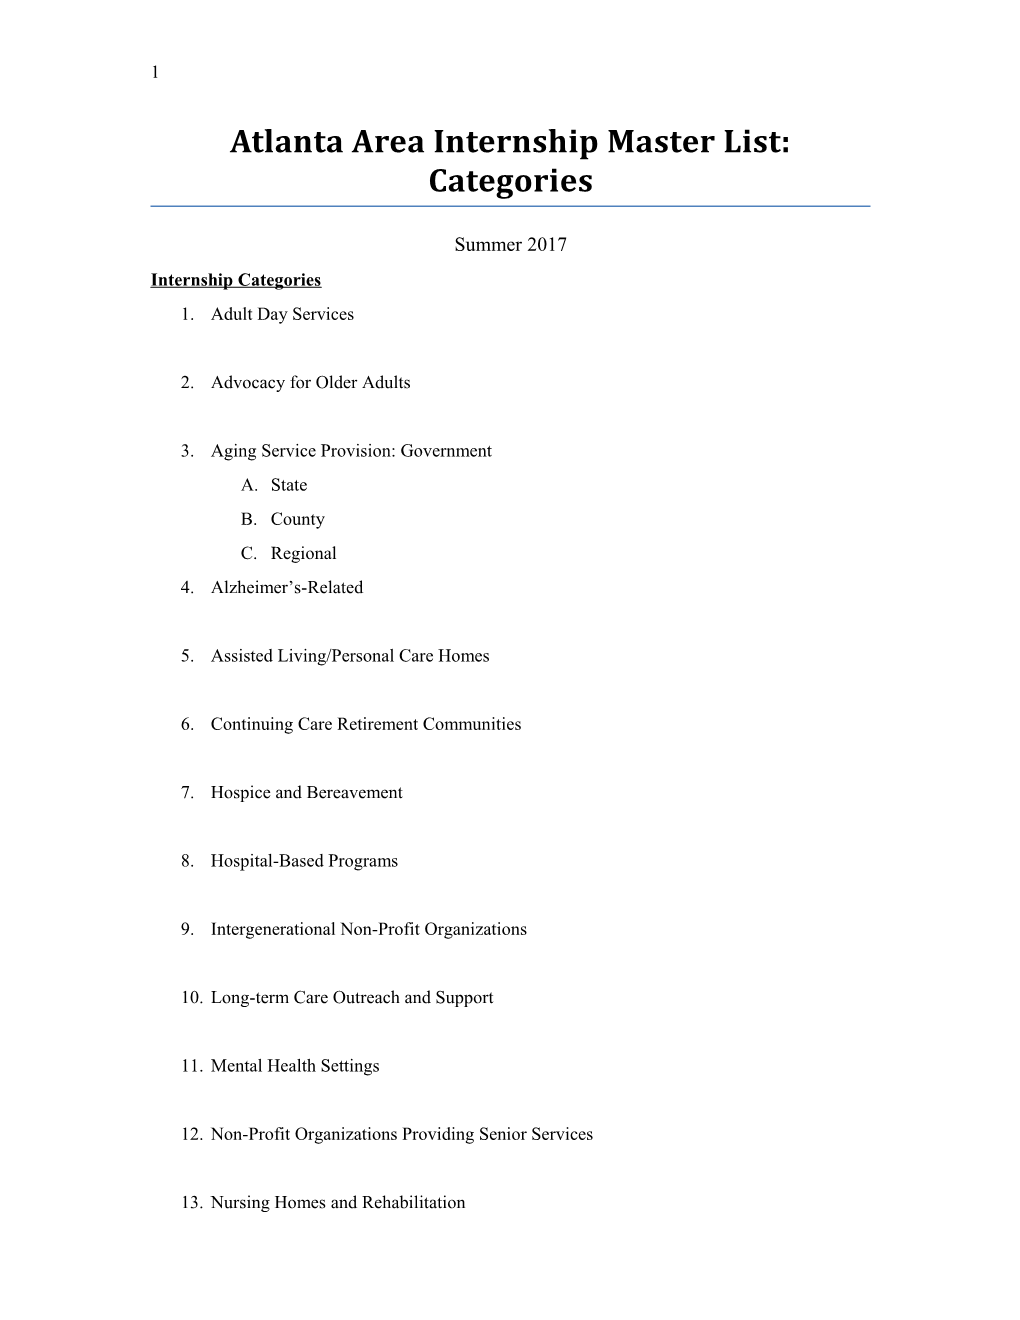 Atlanta Area Internship Master List: Categories